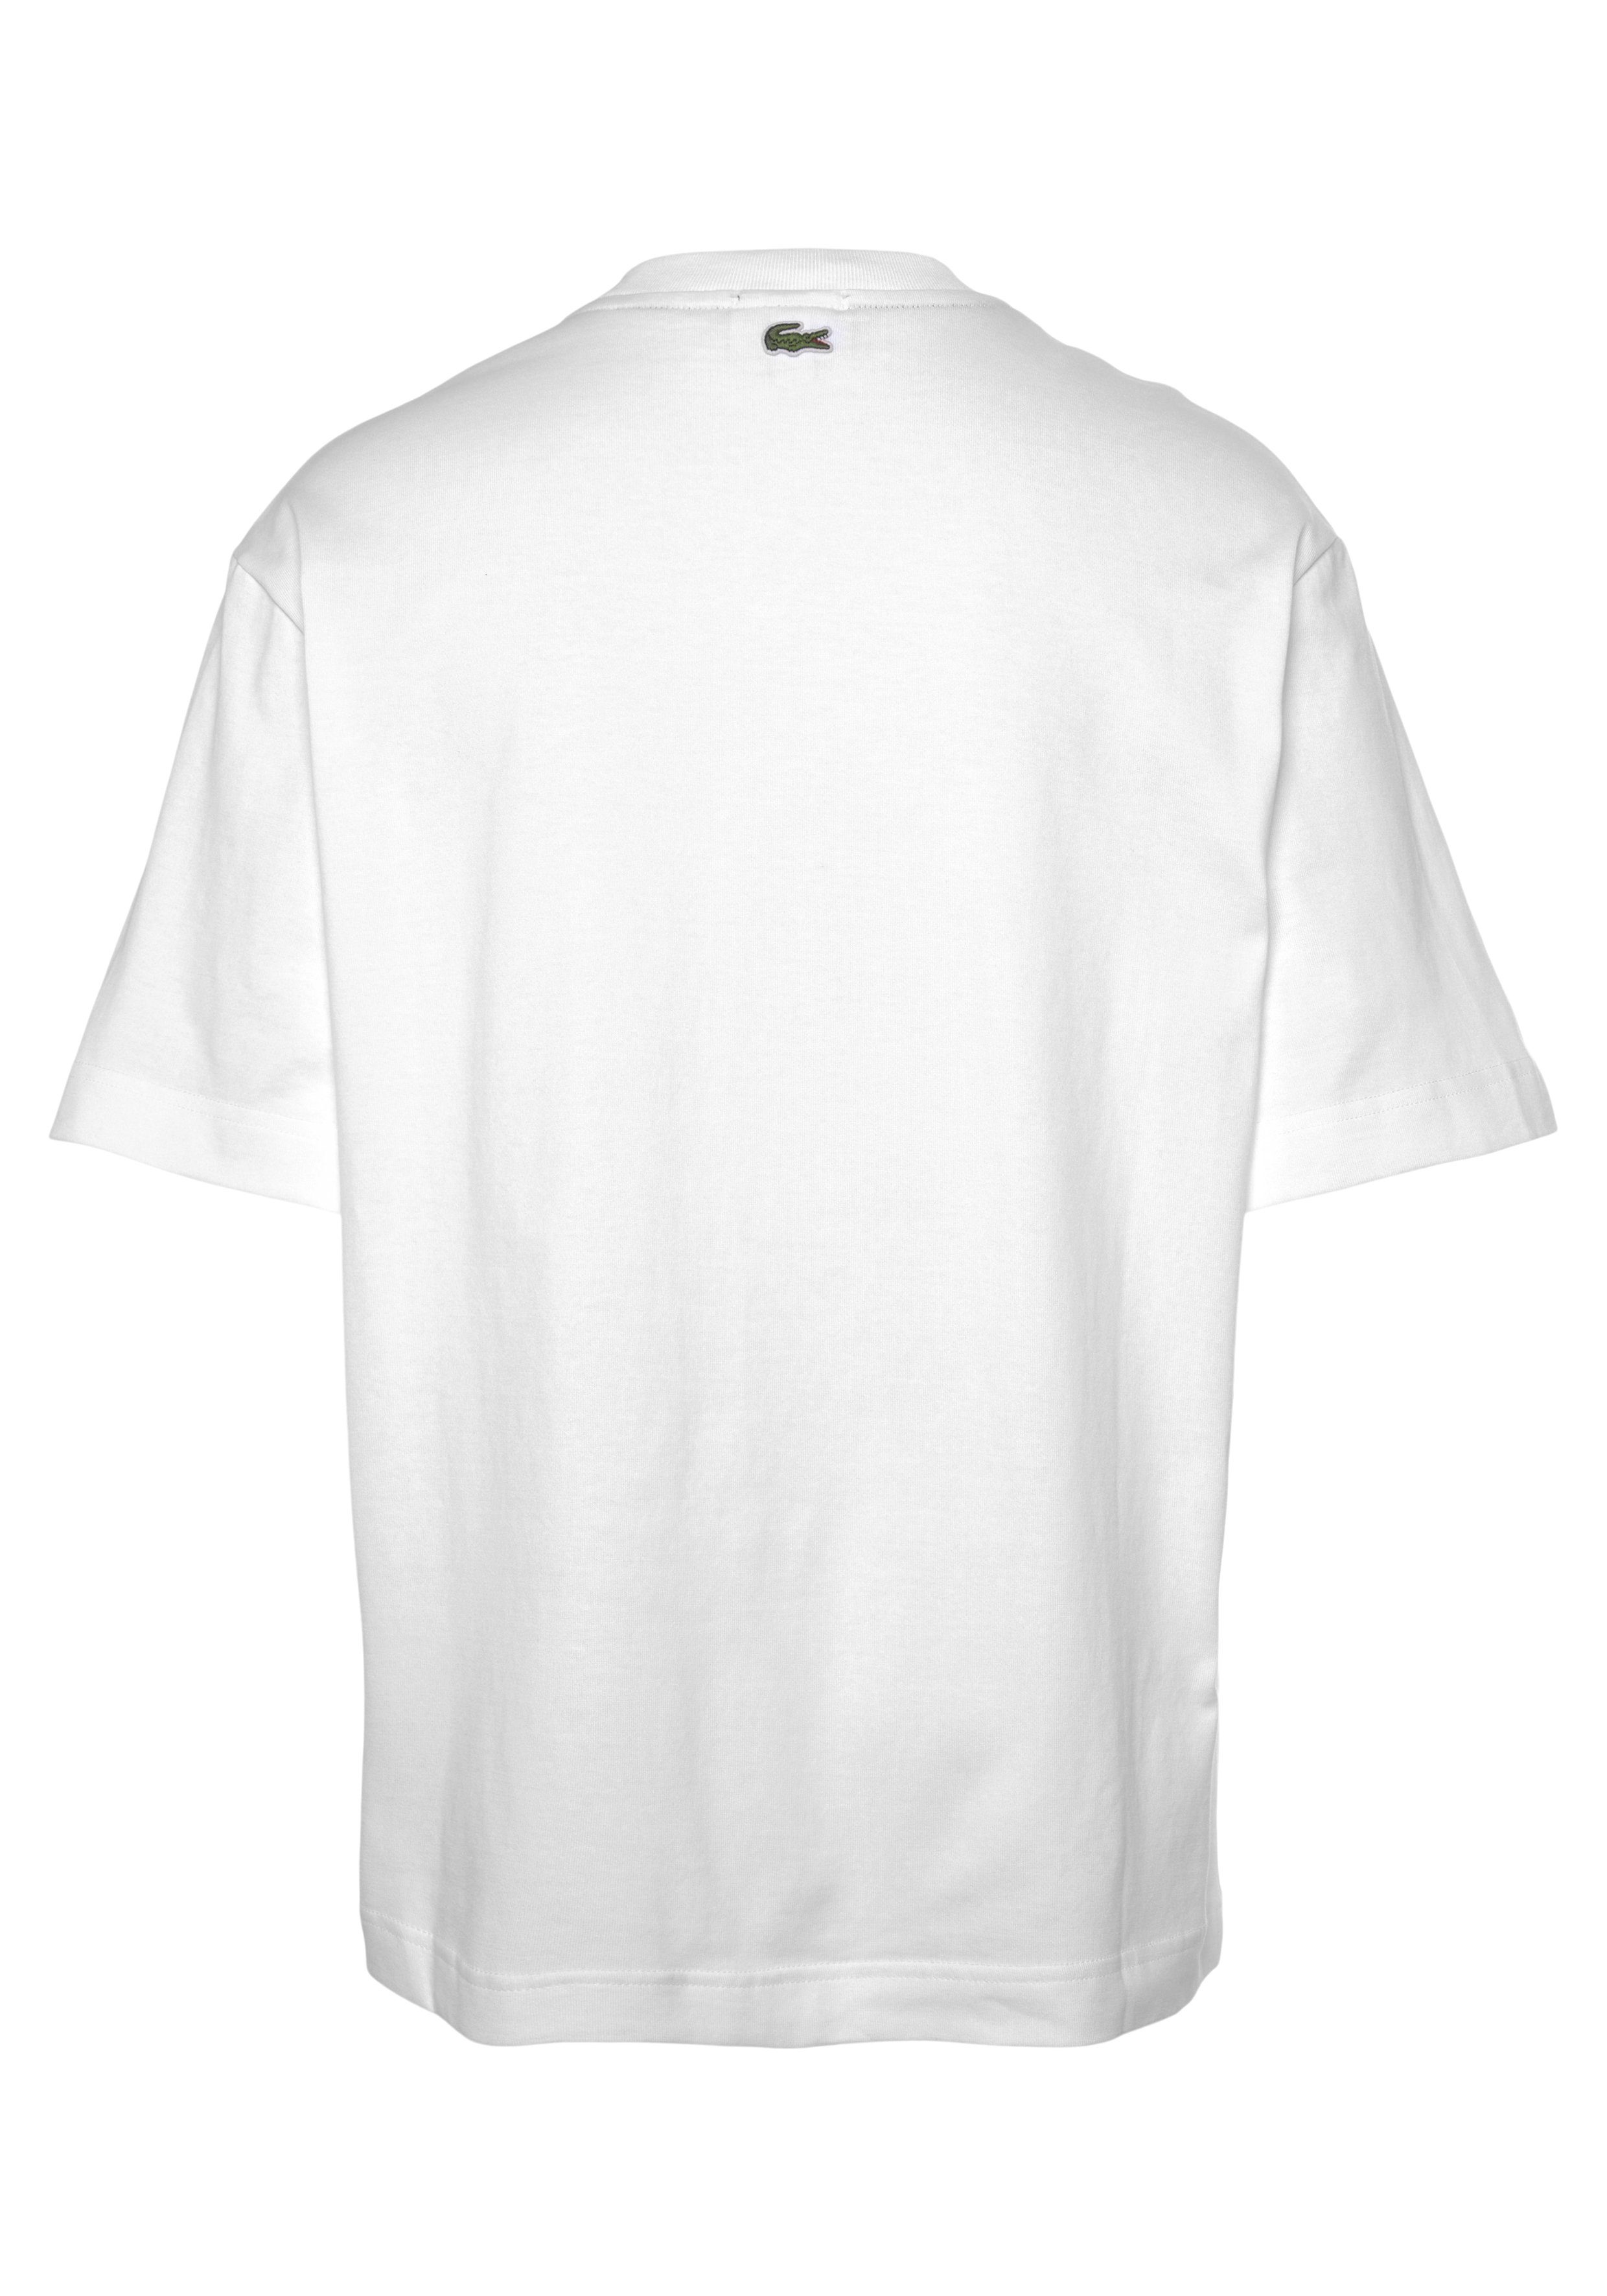 Lacoste mit T-Shirt white Rundhalsausschnitt